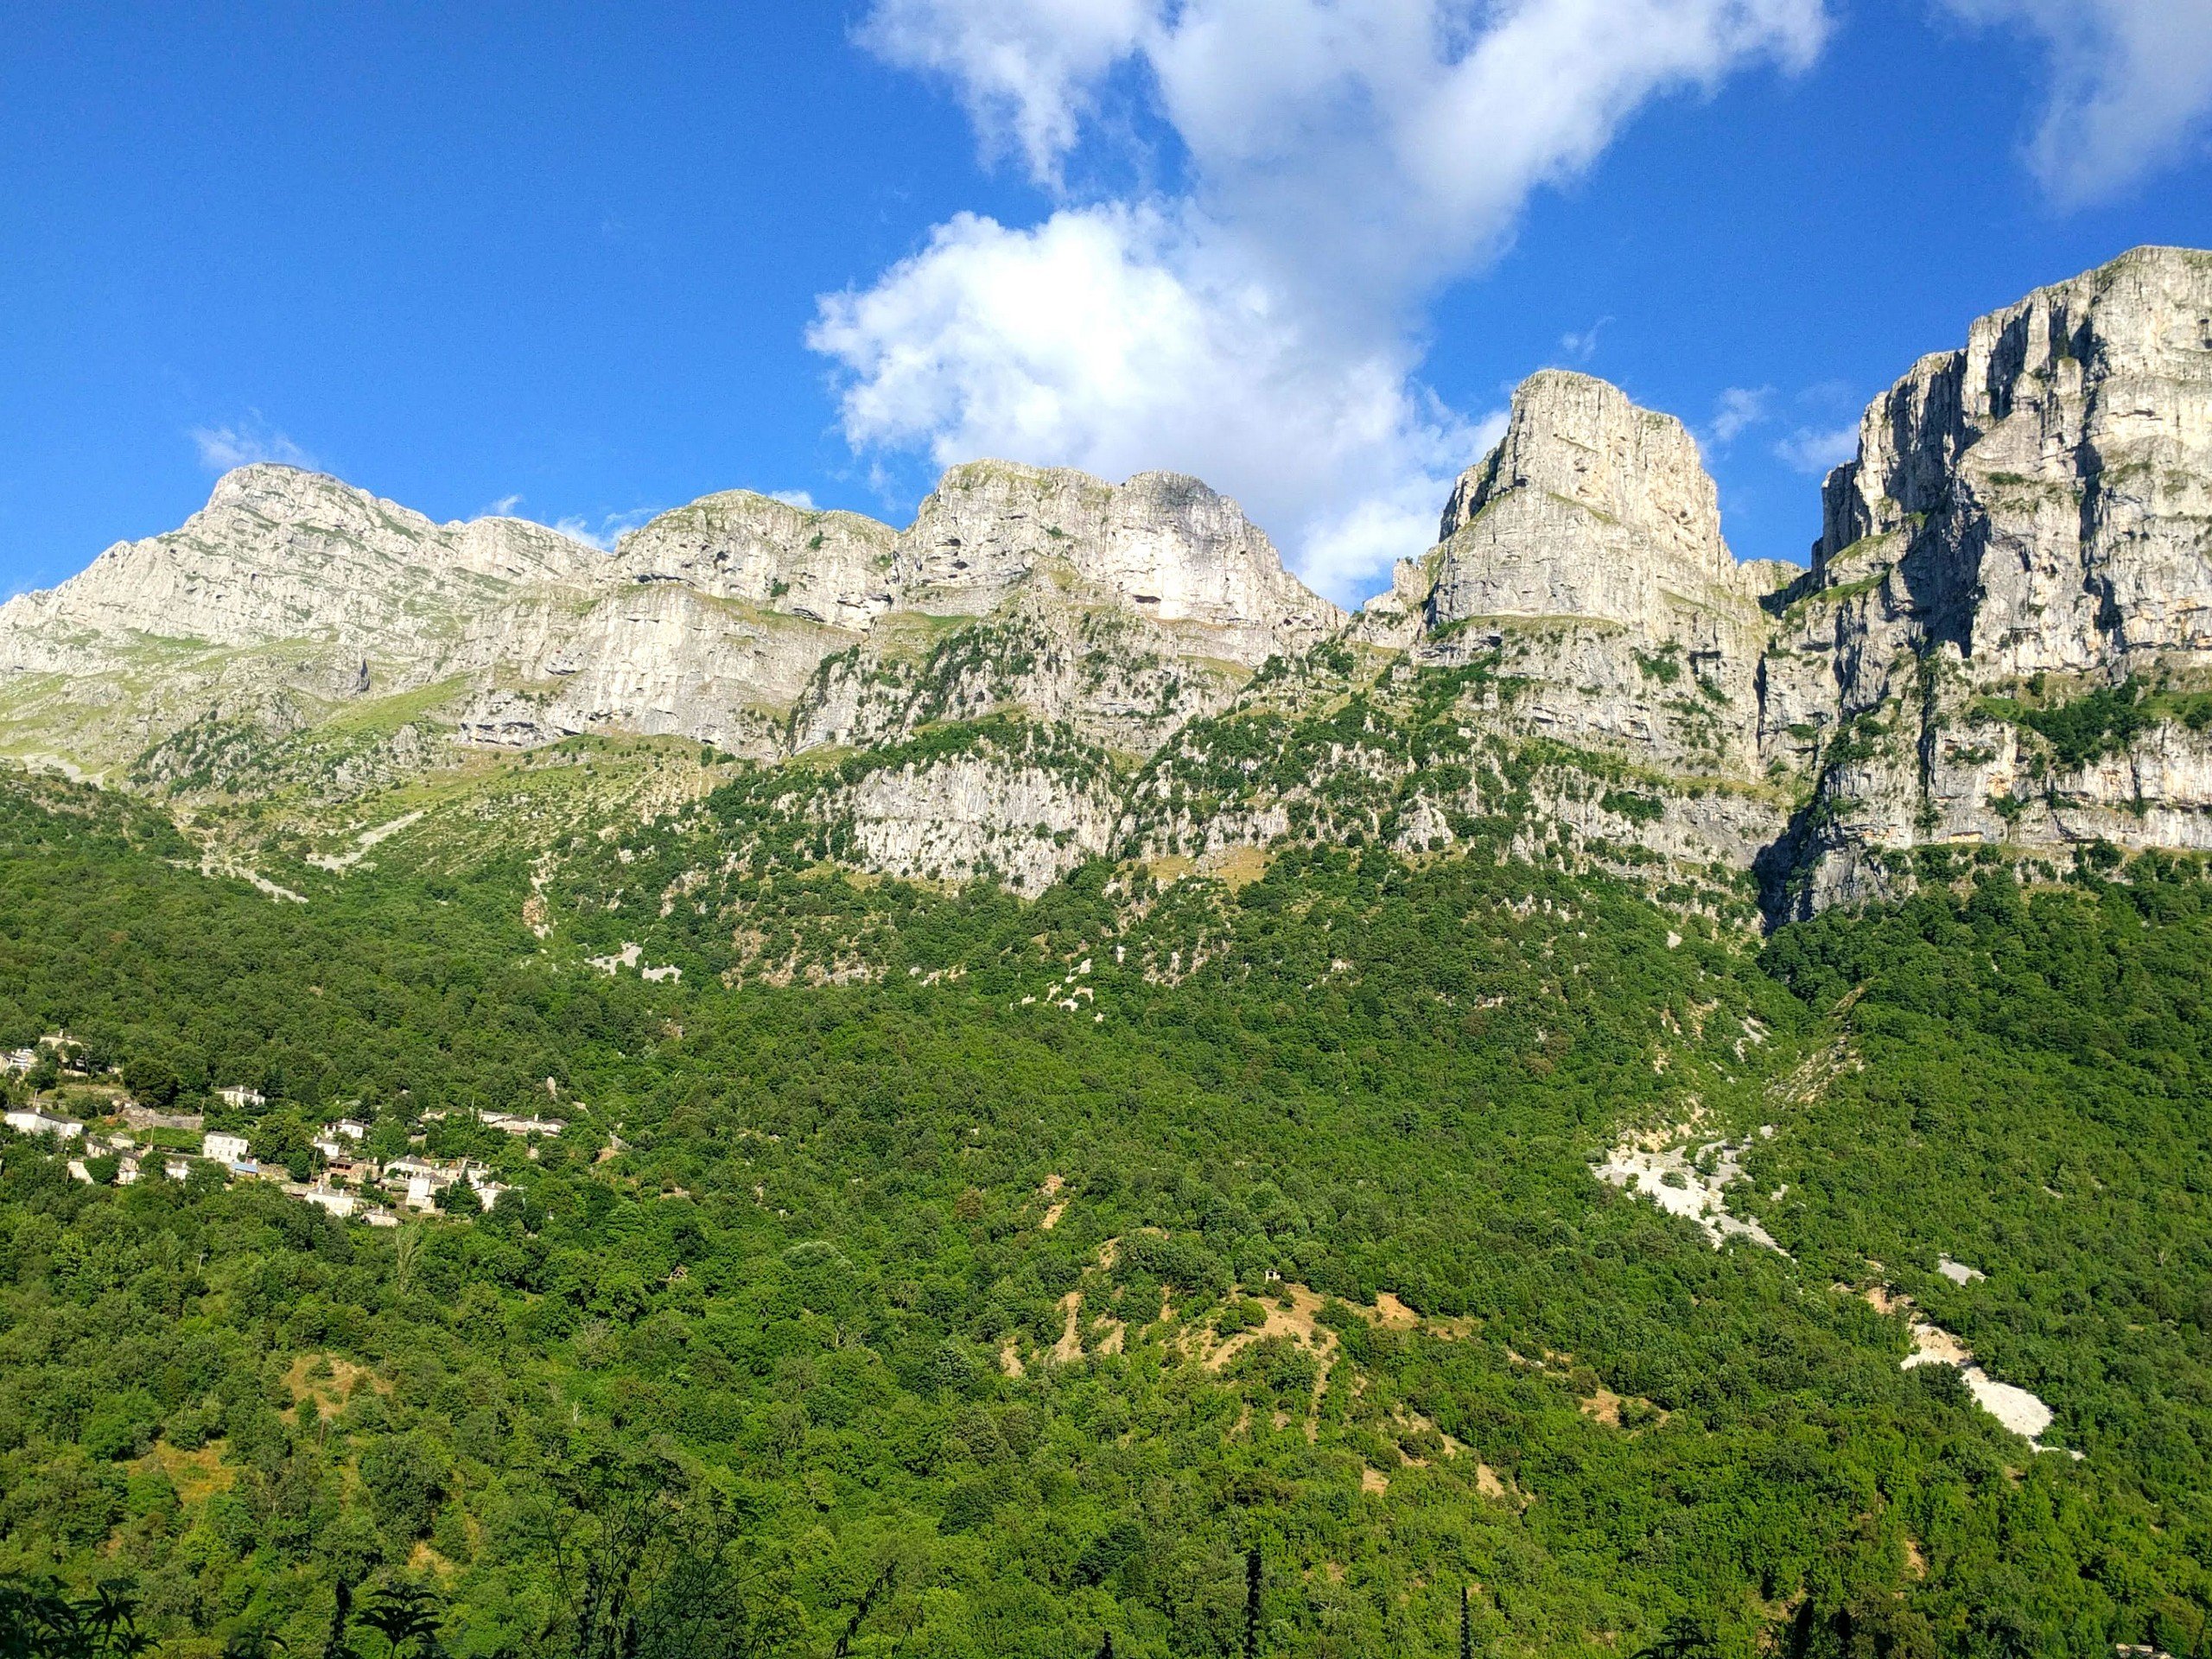 Stunning views around Vikos Gorge